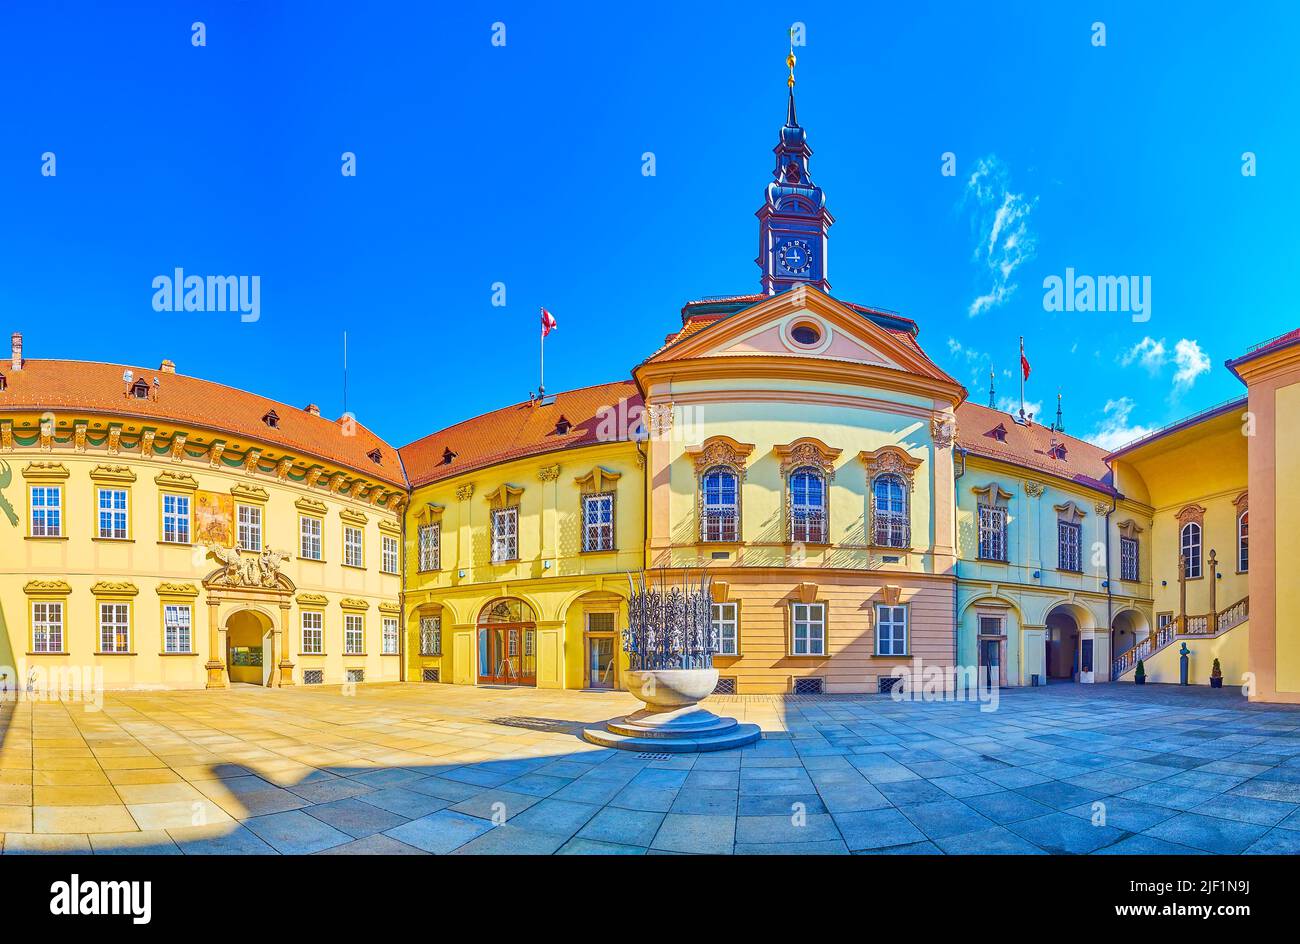 Vue panoramique sur la Nova Radnice (nouvel hôtel de ville) avec la fontaine au milieu de sa cour, Brno, République tchèque Banque D'Images